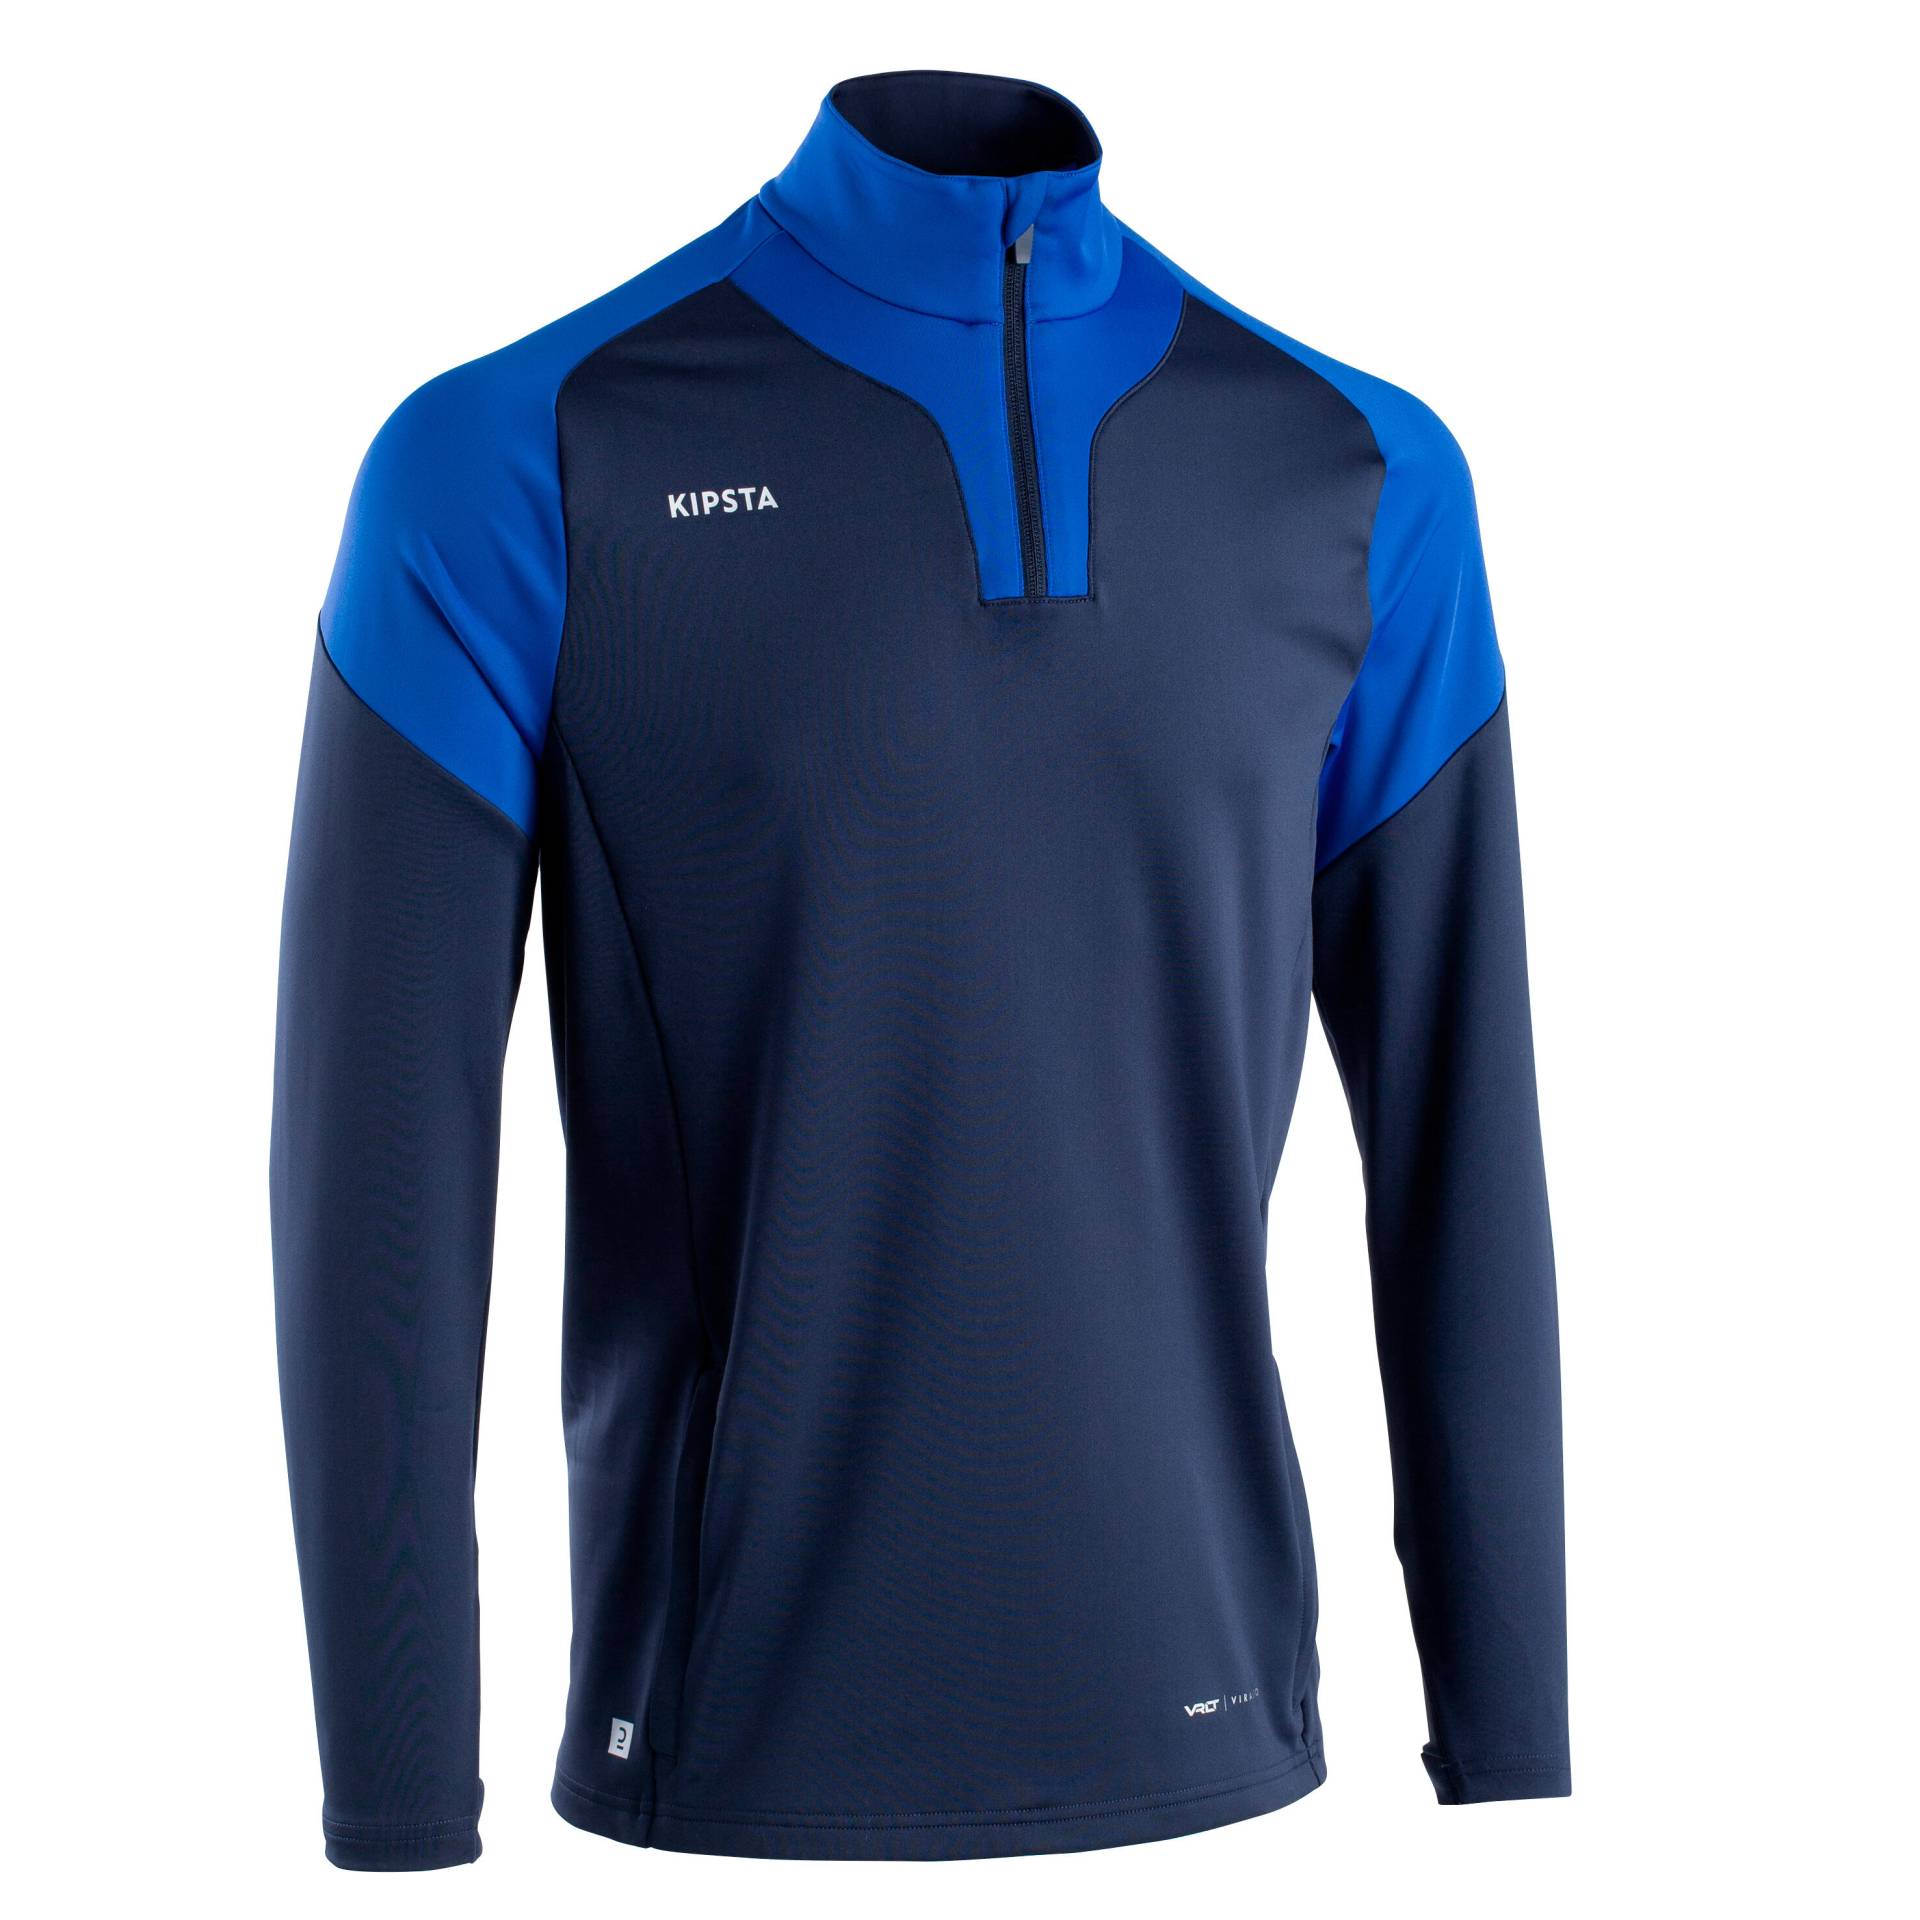 Damen/Herren Fussball Sweatshirt - Viralto mit Reissverschluss marineblau/blau von KIPSTA